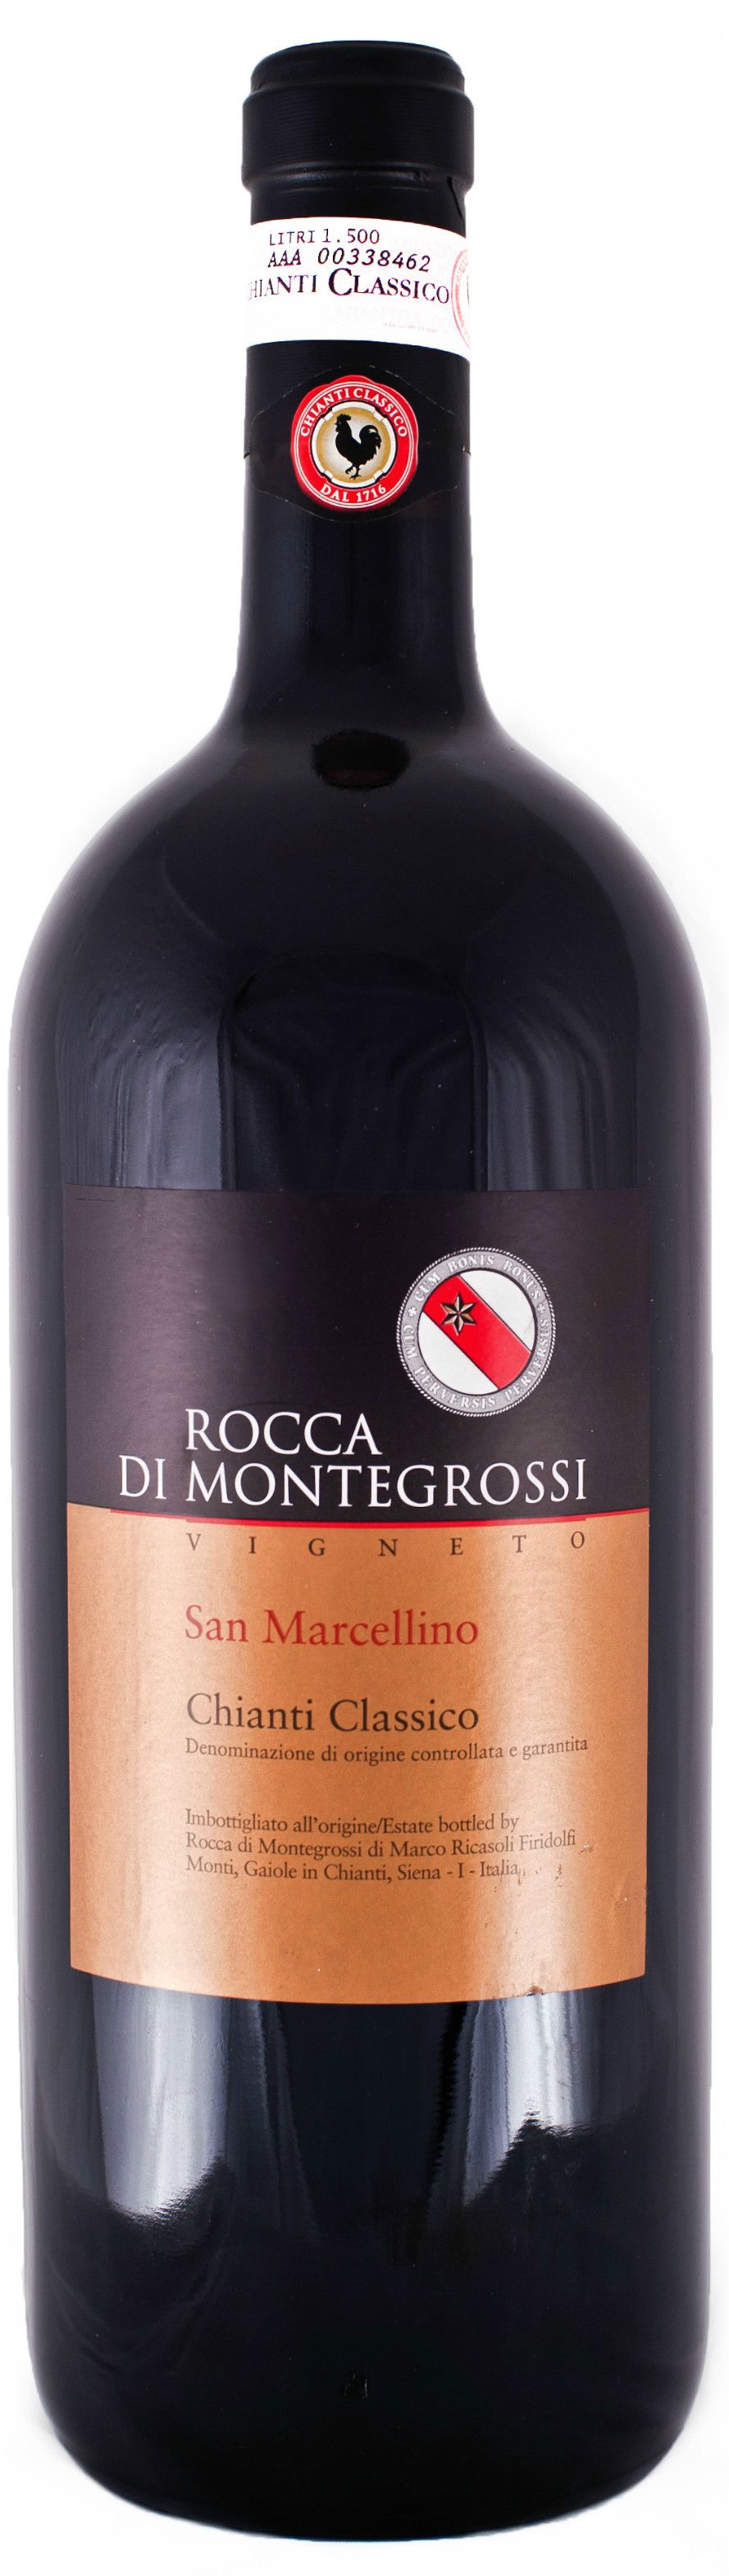 Rocca Di Montegrossi, Vigneto San Marcellino Chianti Classico, 2007